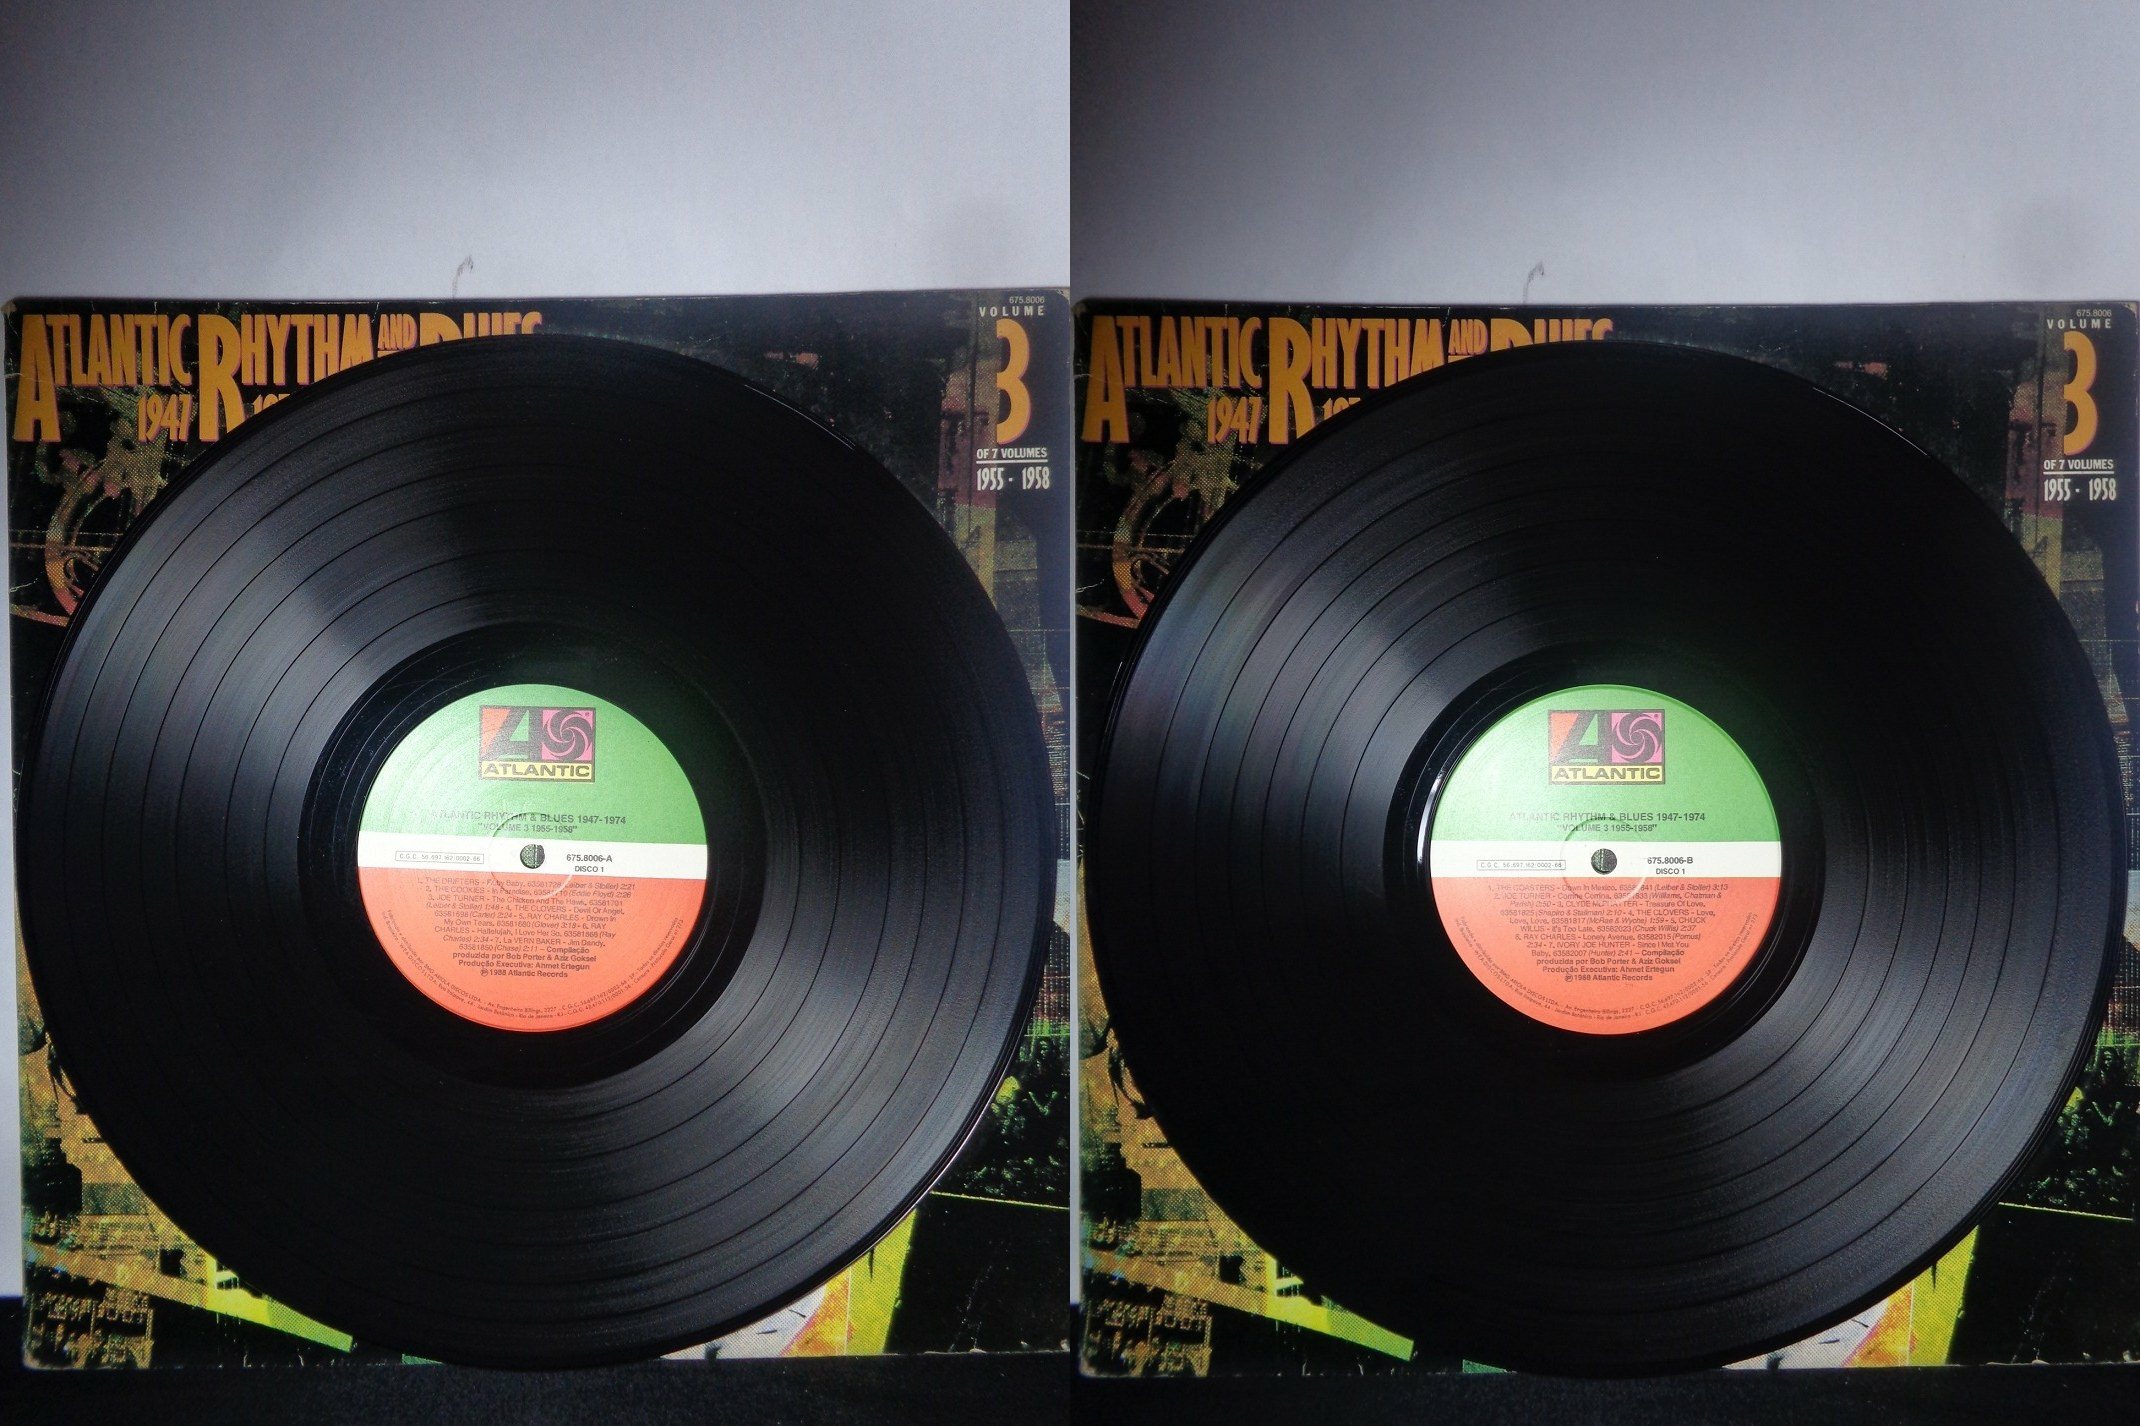 VINIL - Atlantic Rhythm and Blues - 1947-1974 vol 3 1955-1958 (Duplo)